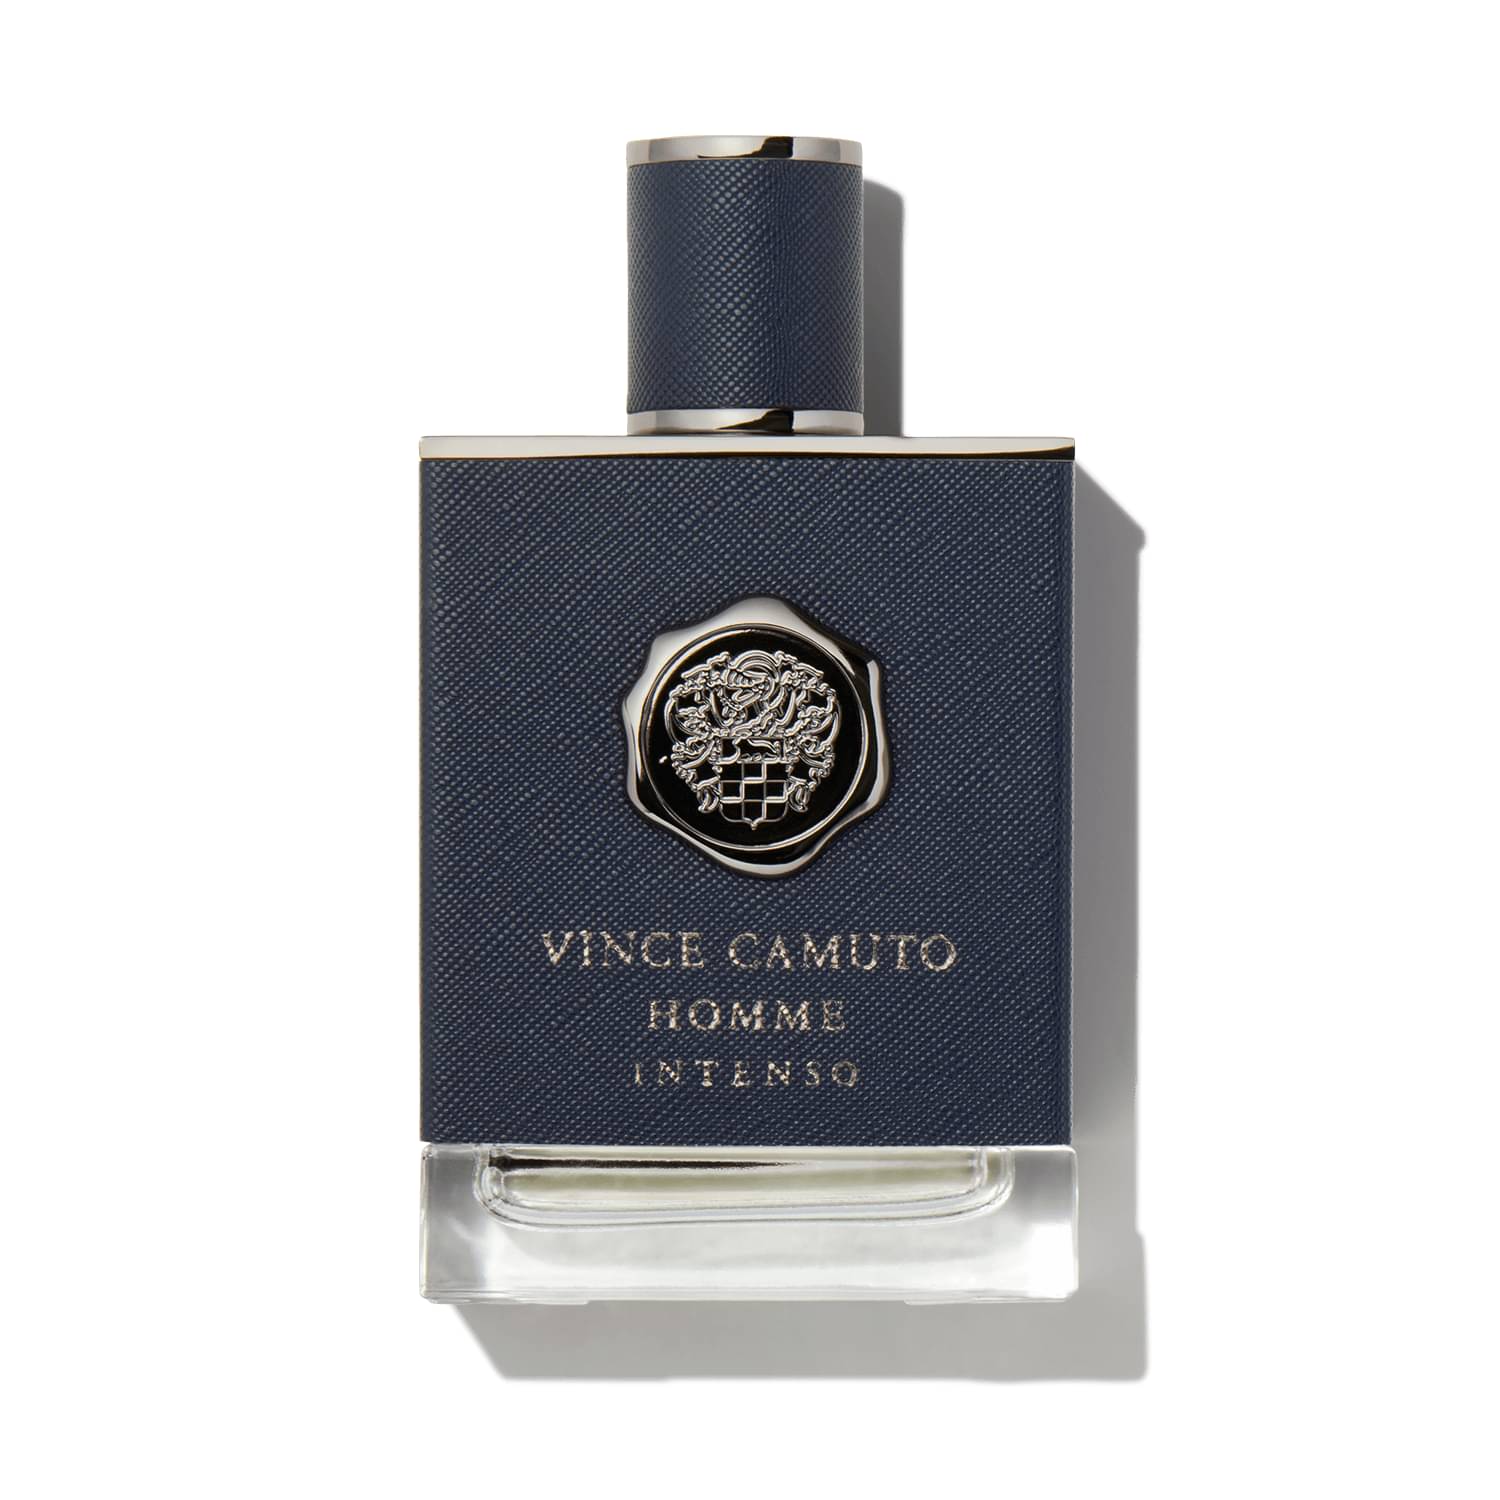 Vince Camuto Vince Camuto Men's Fragrance Sampler Set